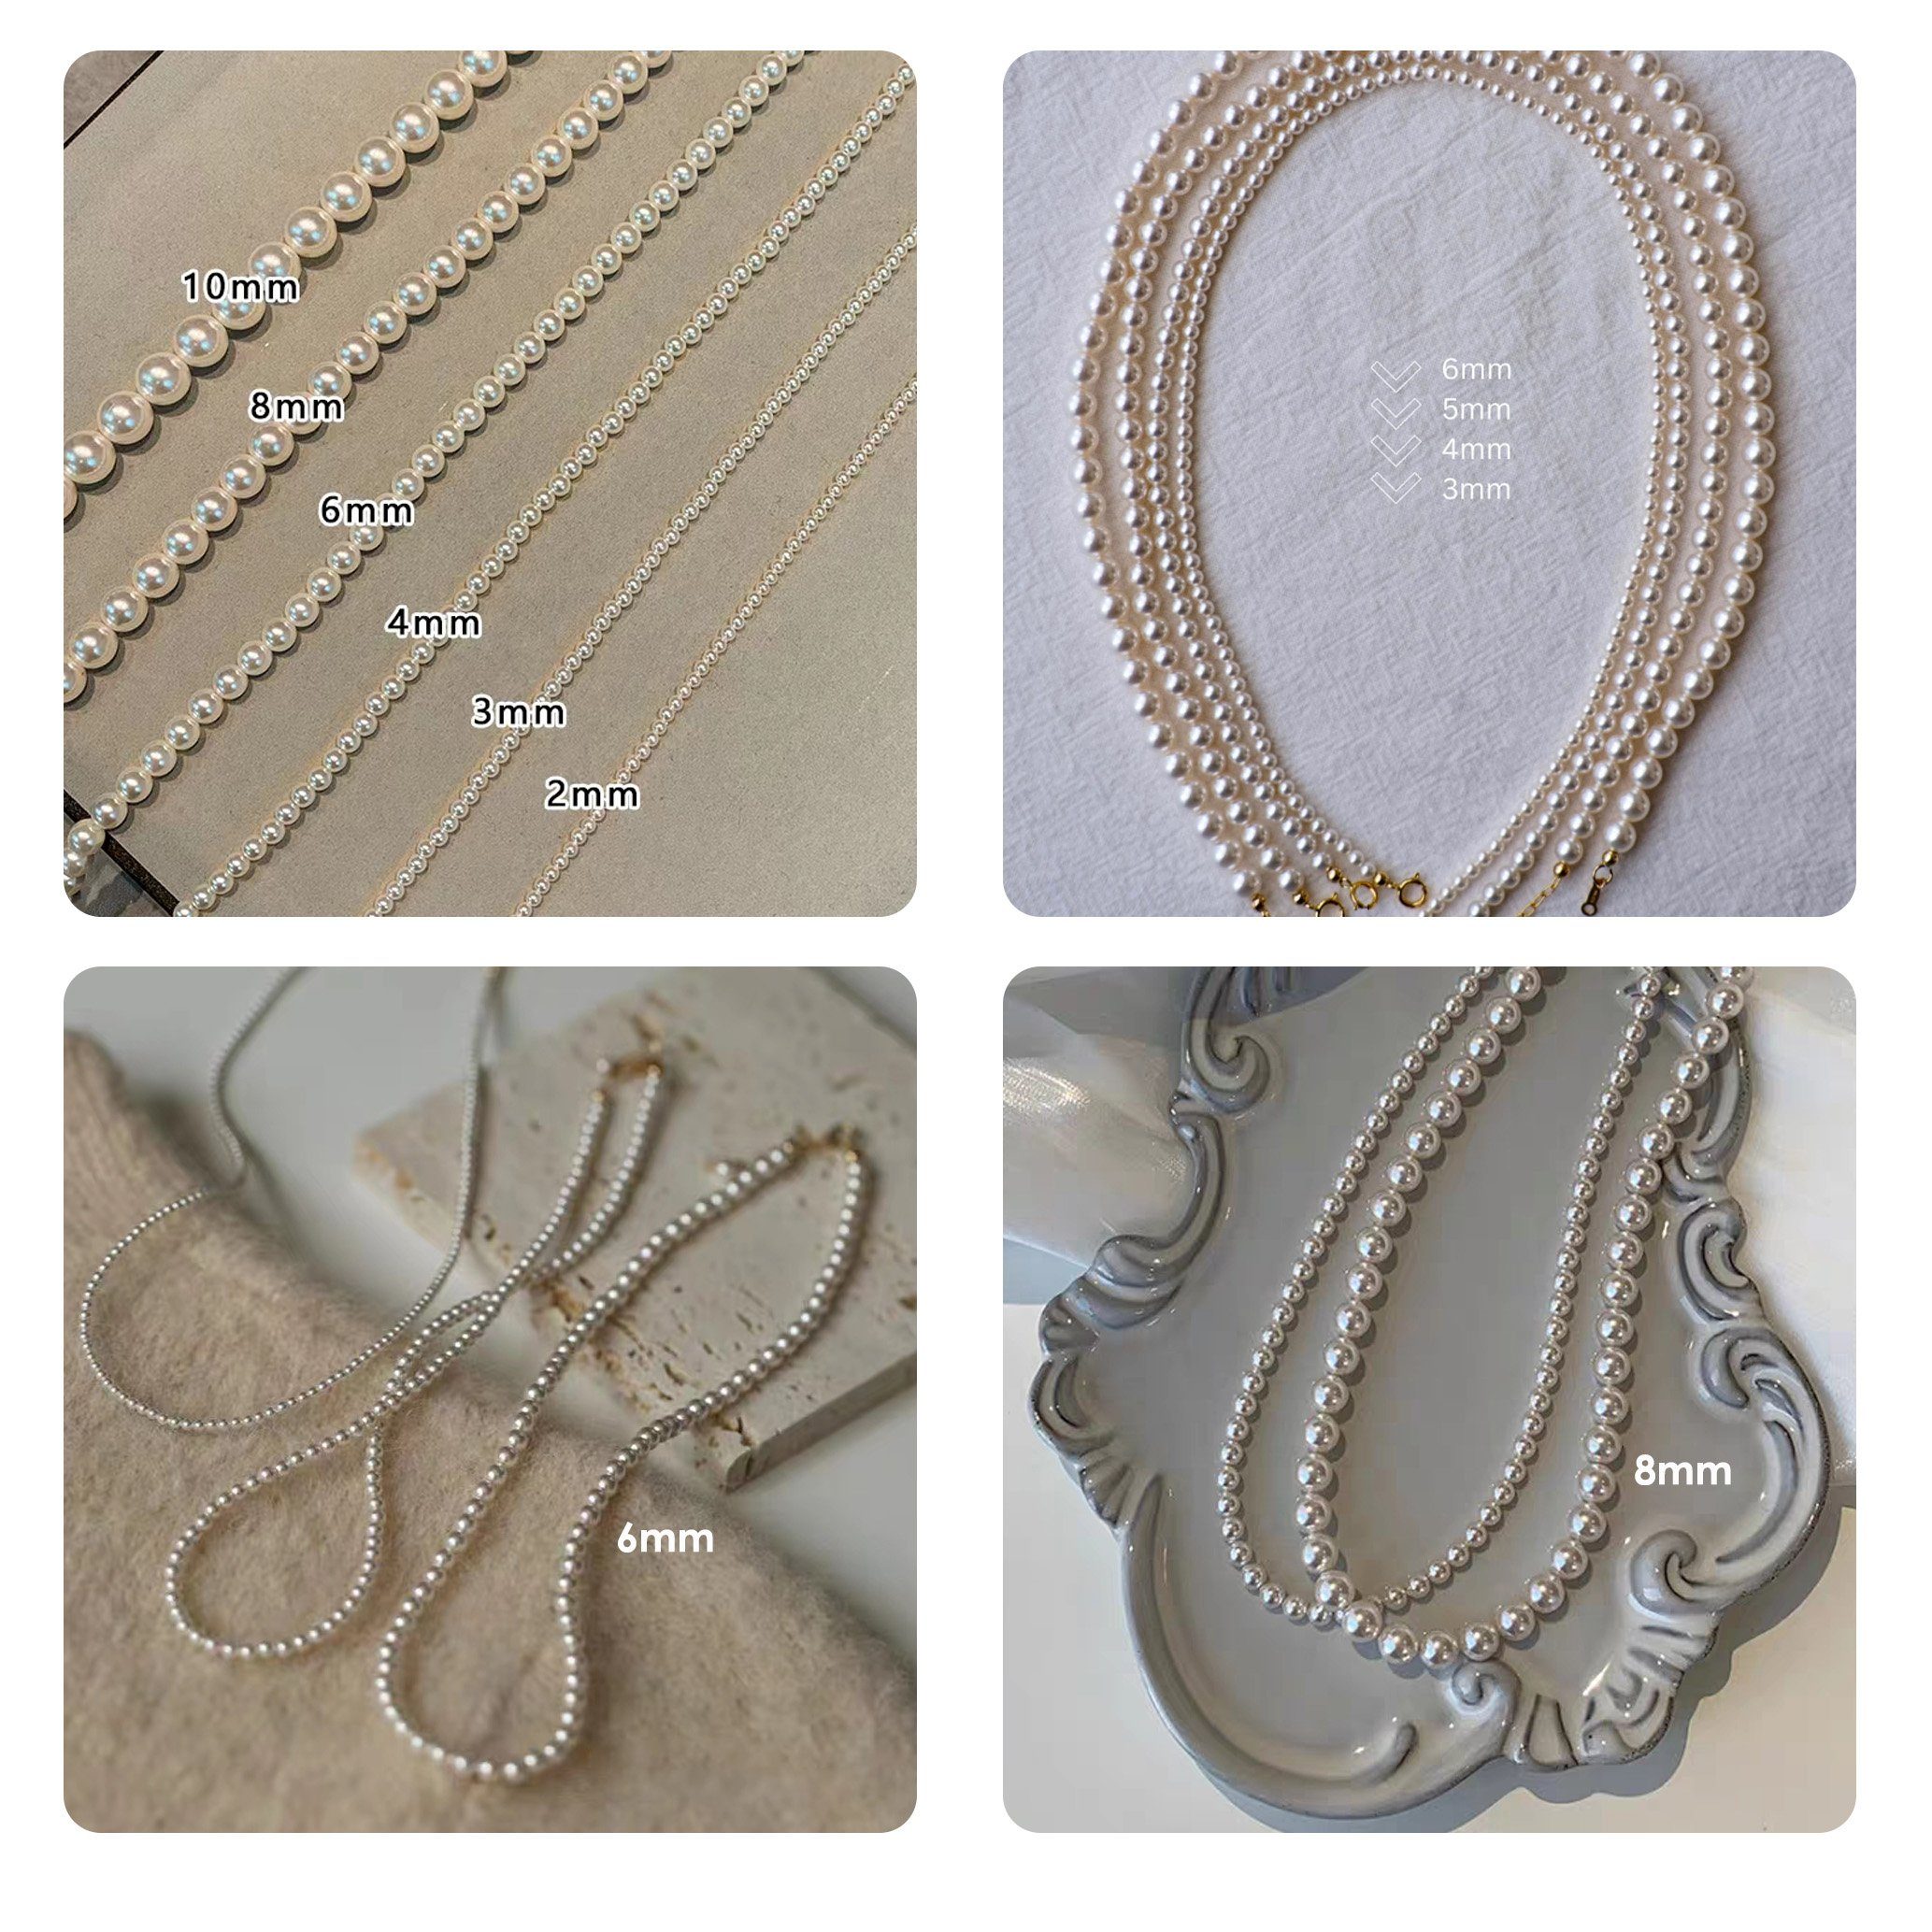 GOLDEN Perlenkette Kristall Pearls + Perlen 5cm 45cm Halskette Crystal Swarovski Runde 5810 Perlen Halskette